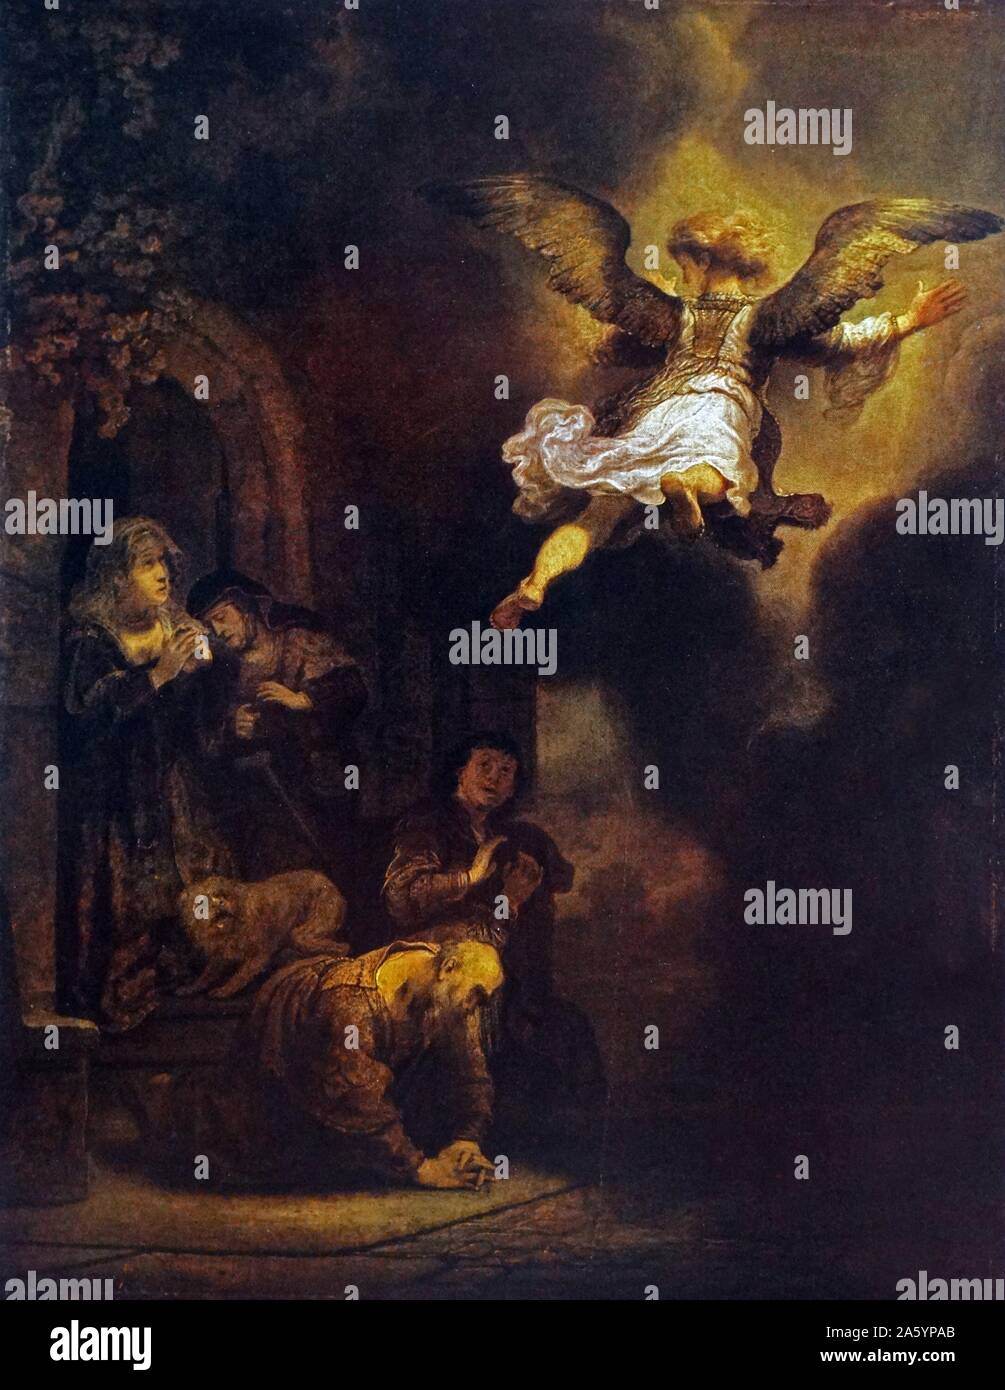 Rembrandt Harmenszoon van Rijn's painting intitulée 'L'ange Raphaël quittant Tobie et sa famille". Rembrandt (1606-1669) peintre et graveur néerlandais de l'âge d'or hollandais et baroque. Datée 1639 Banque D'Images